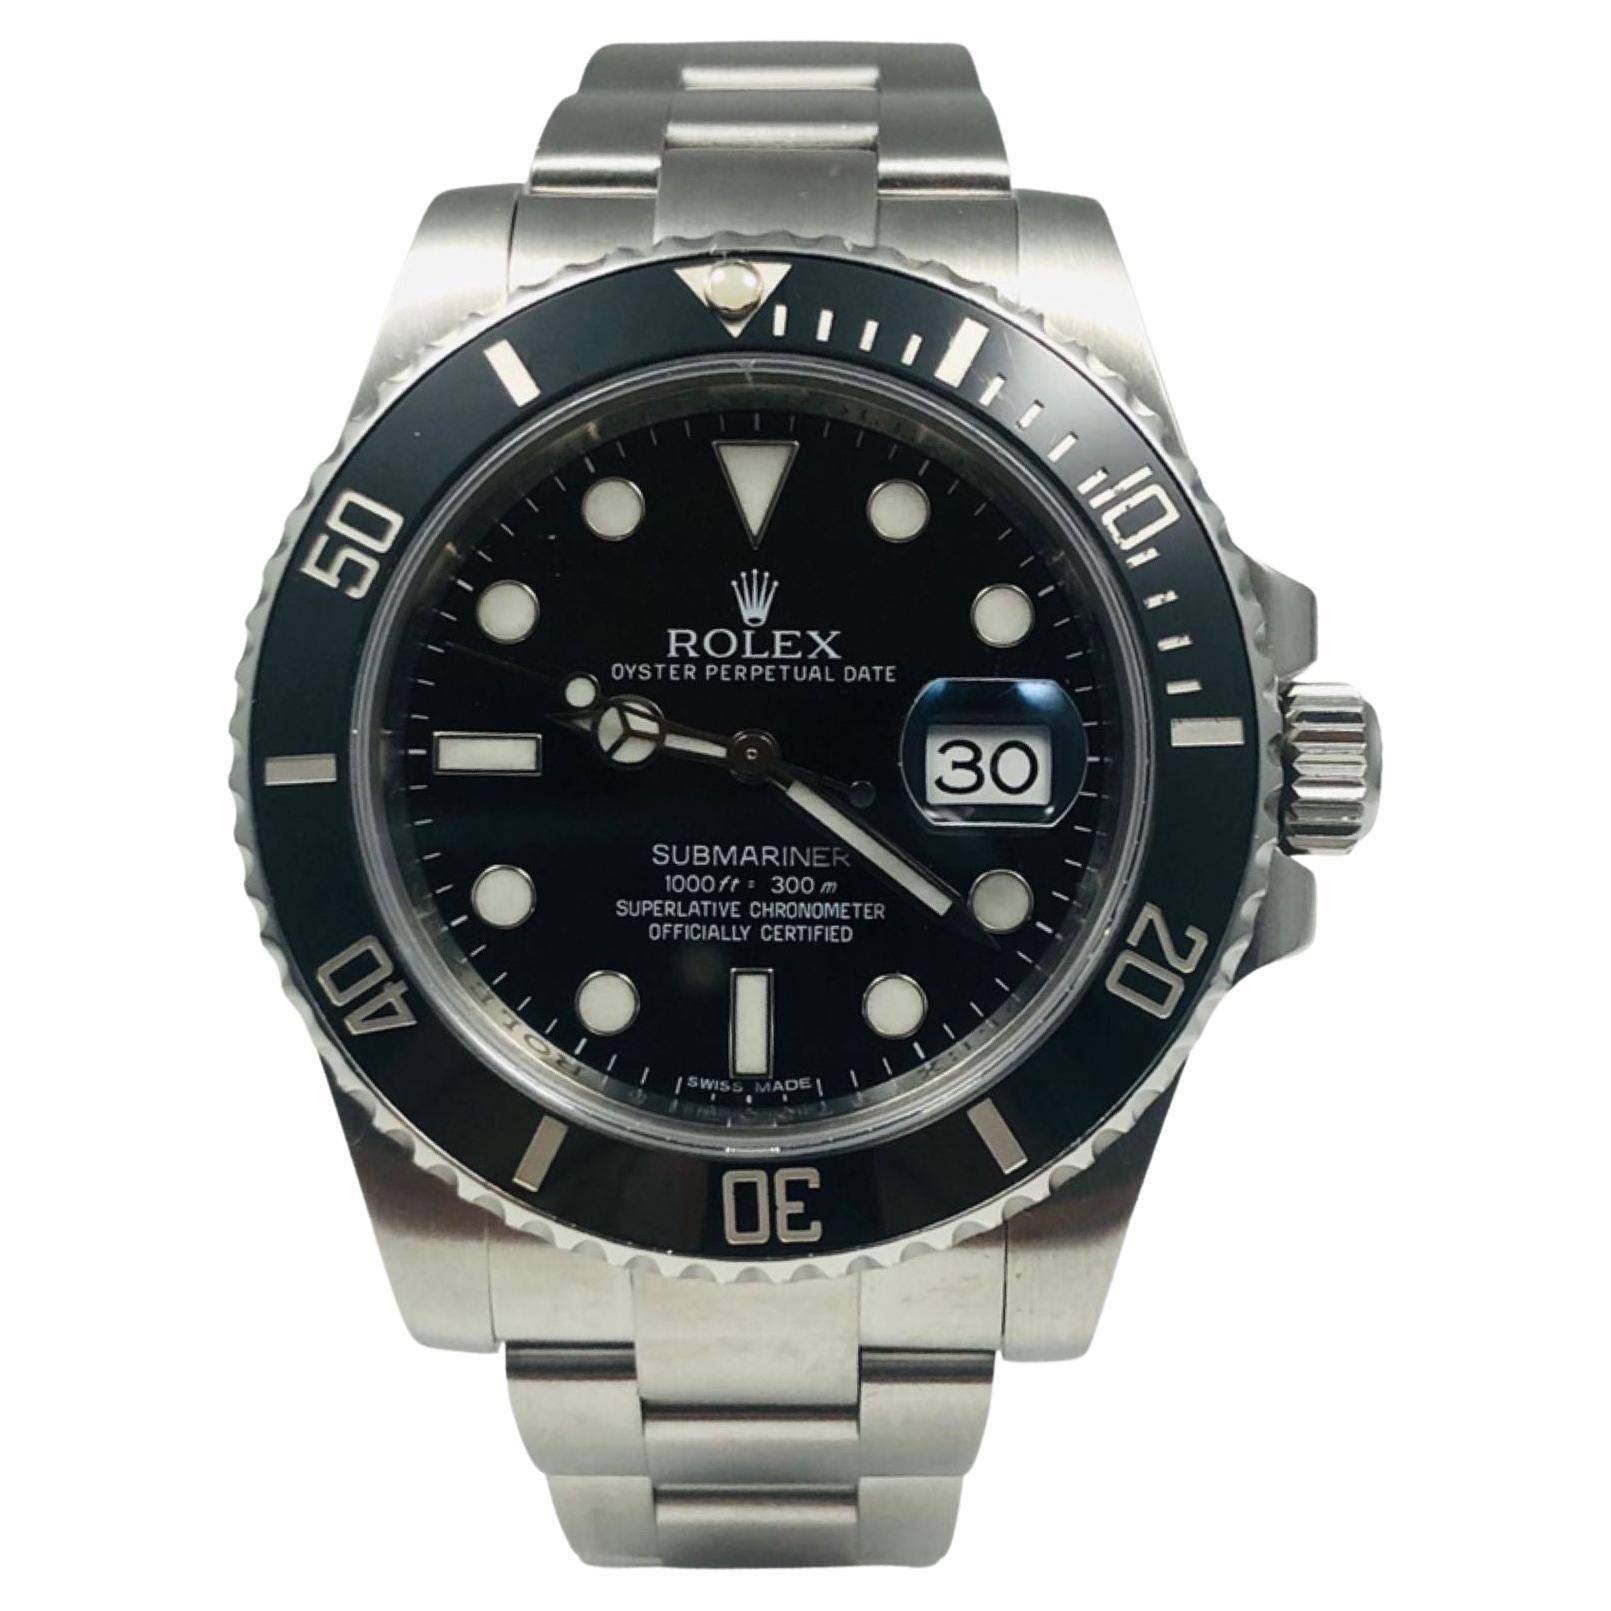 Rolex Montre Submariner Date avec cadran noir en céramique et lunette en acier inoxydable, réf. 116610